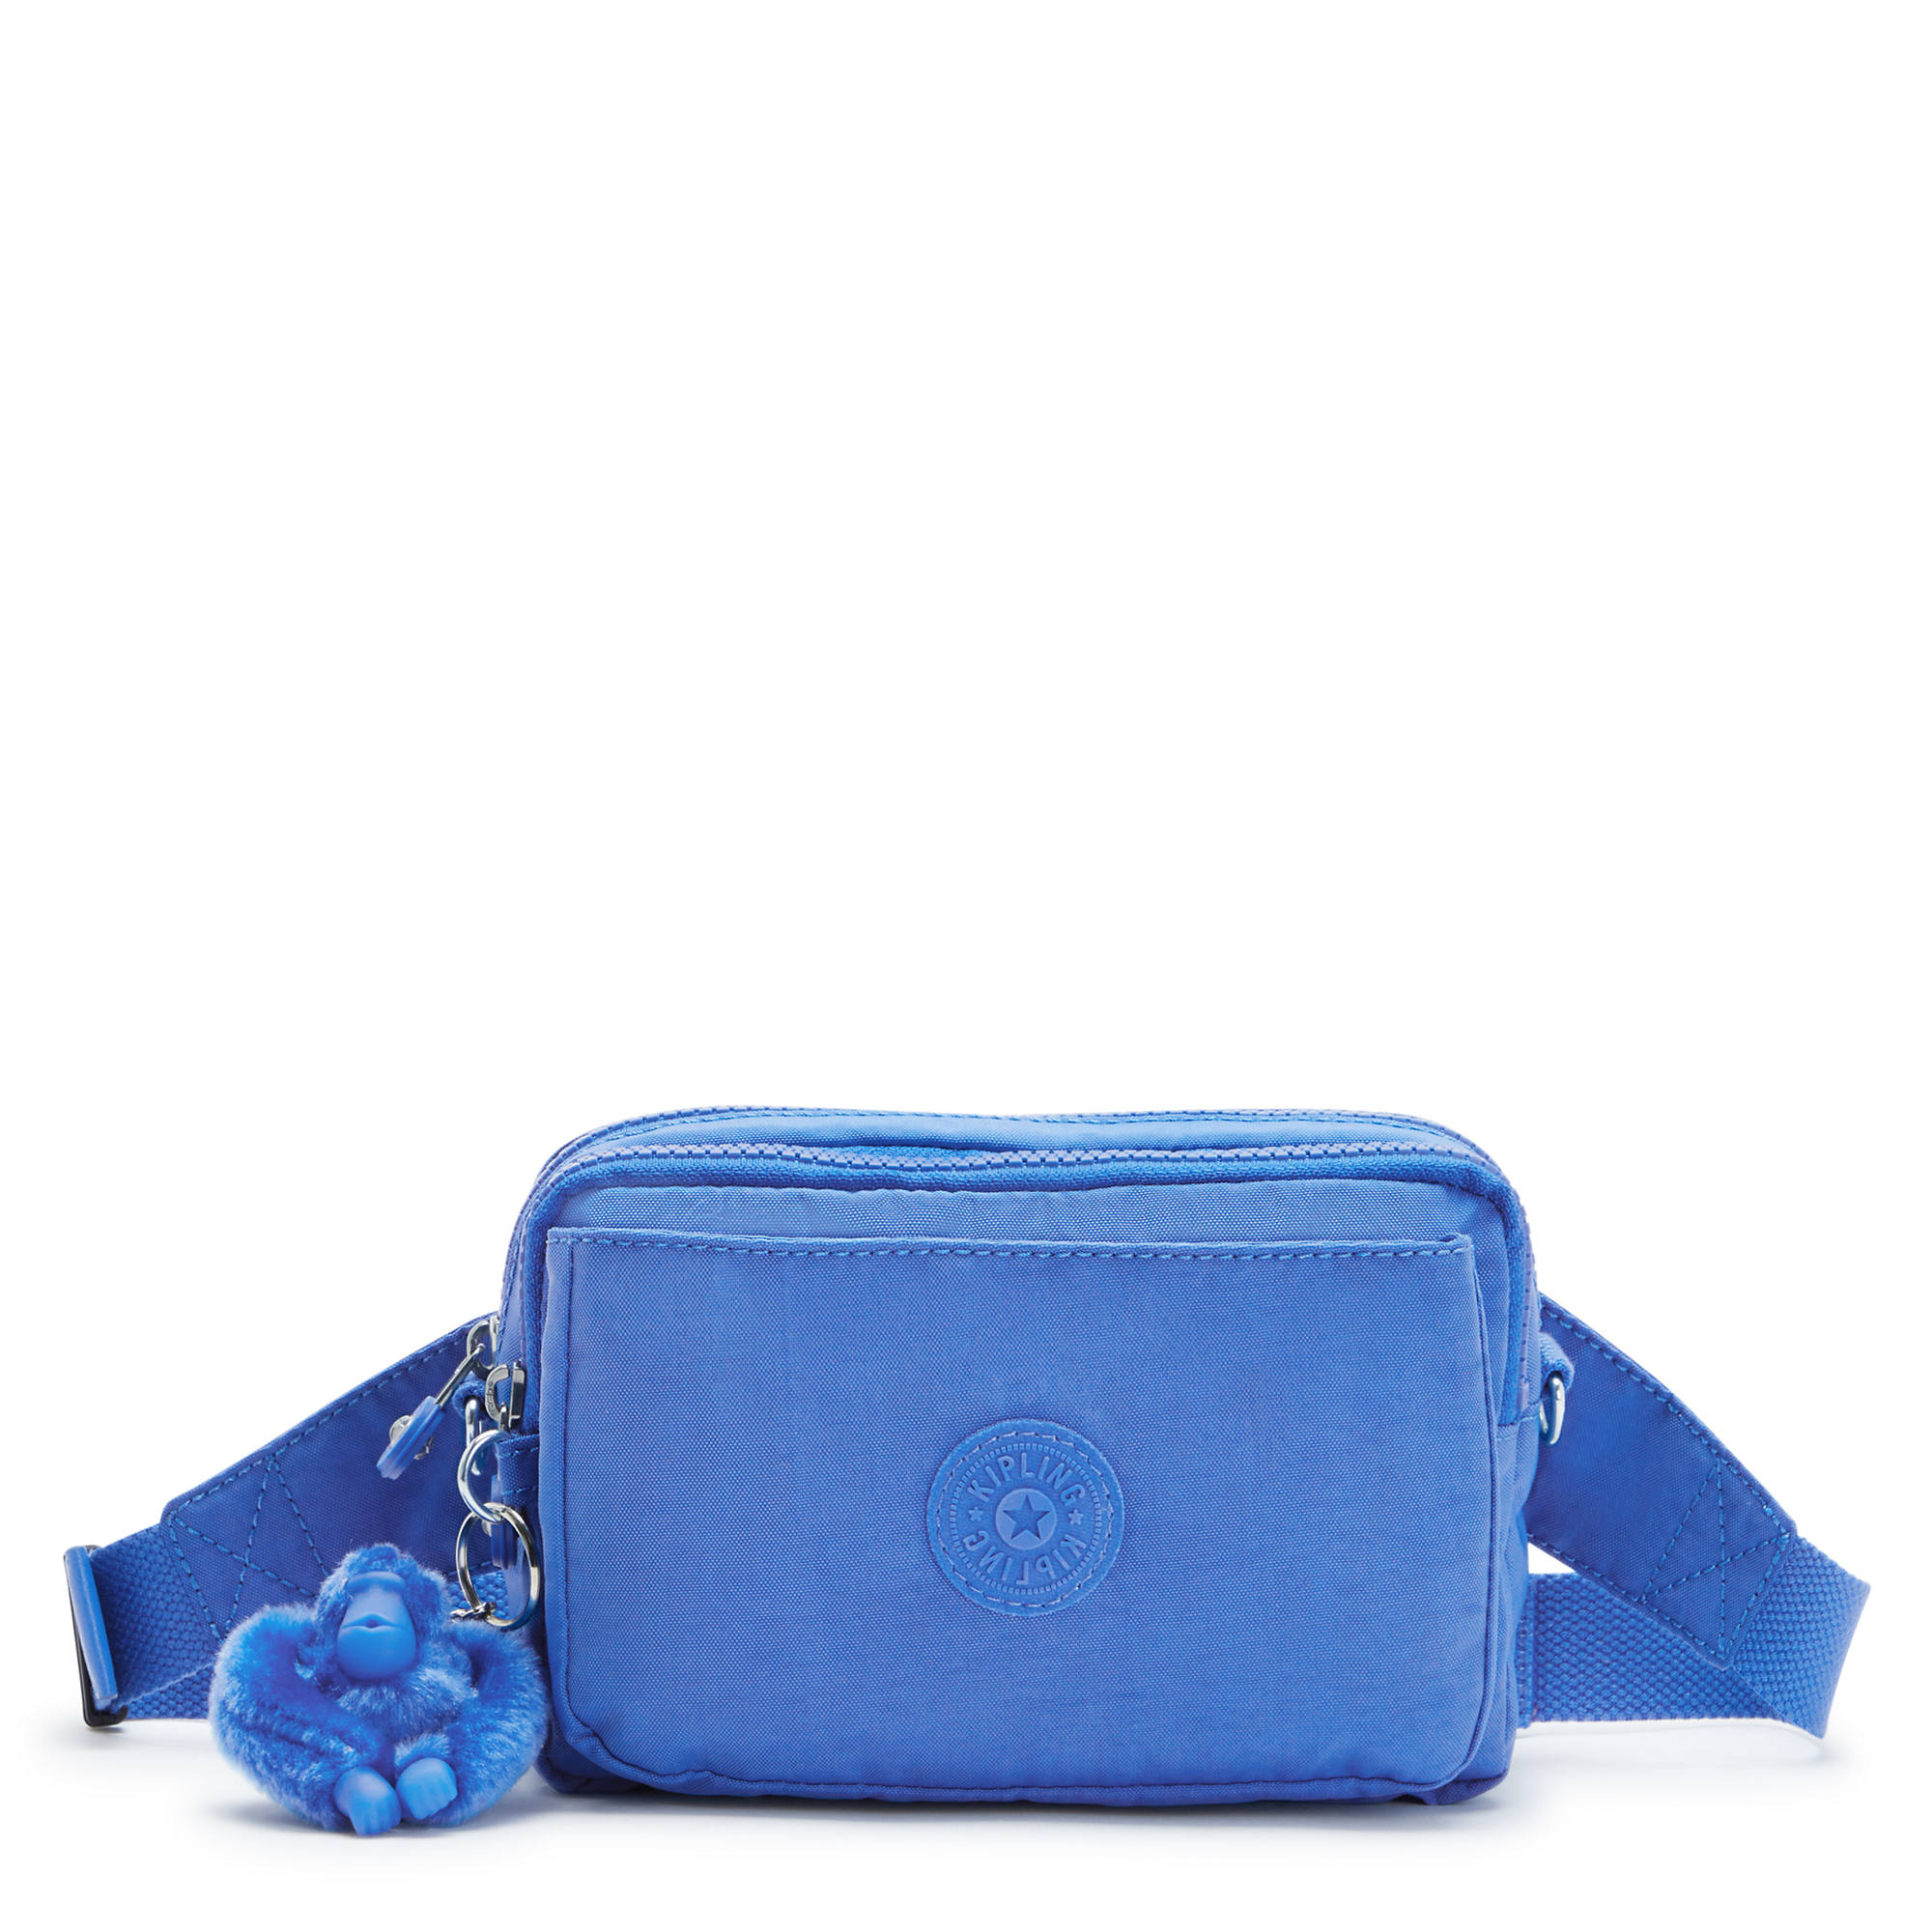 Kipling Abanu Multi Convertible Crossbody Bag Havana Blue